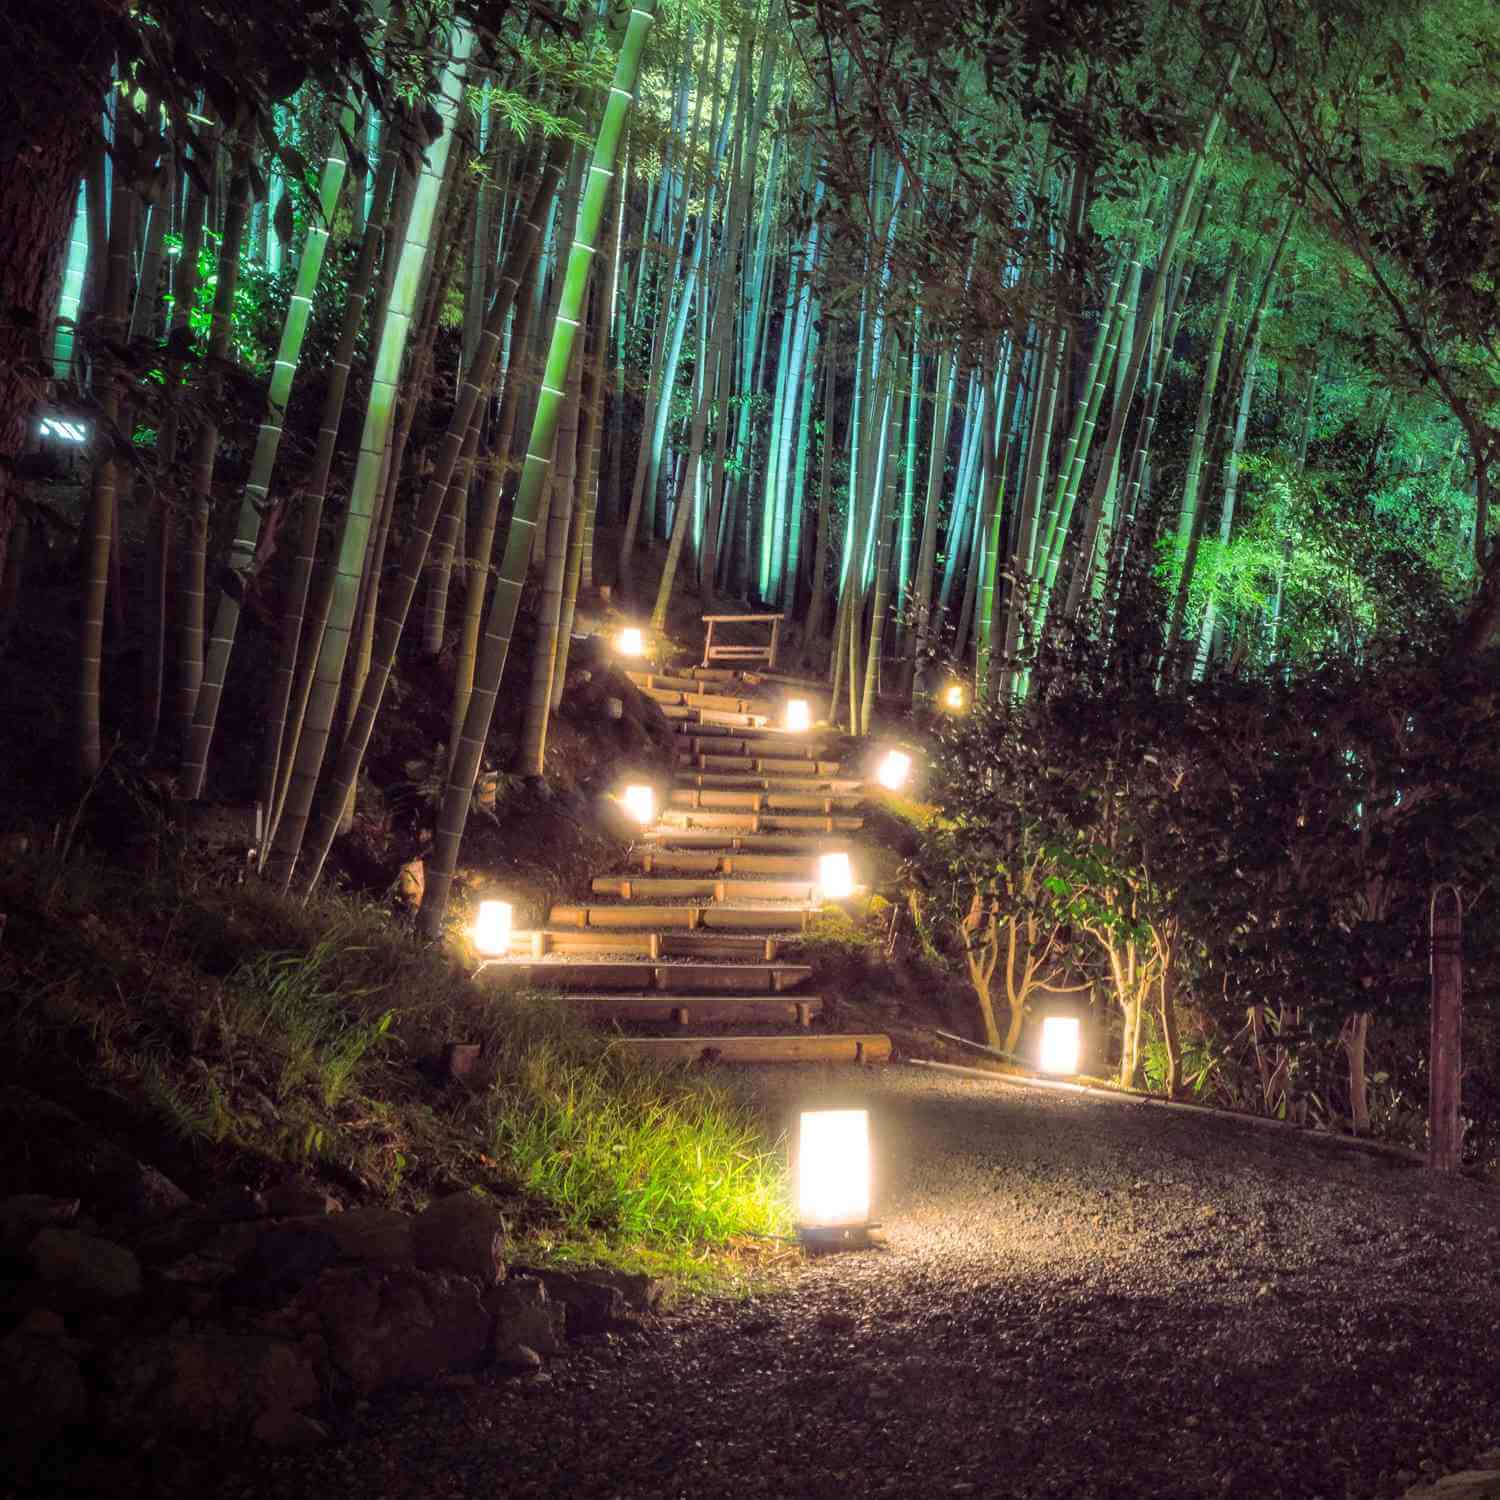 Kodaiji Temple in Kyoto = Shutterstock 8